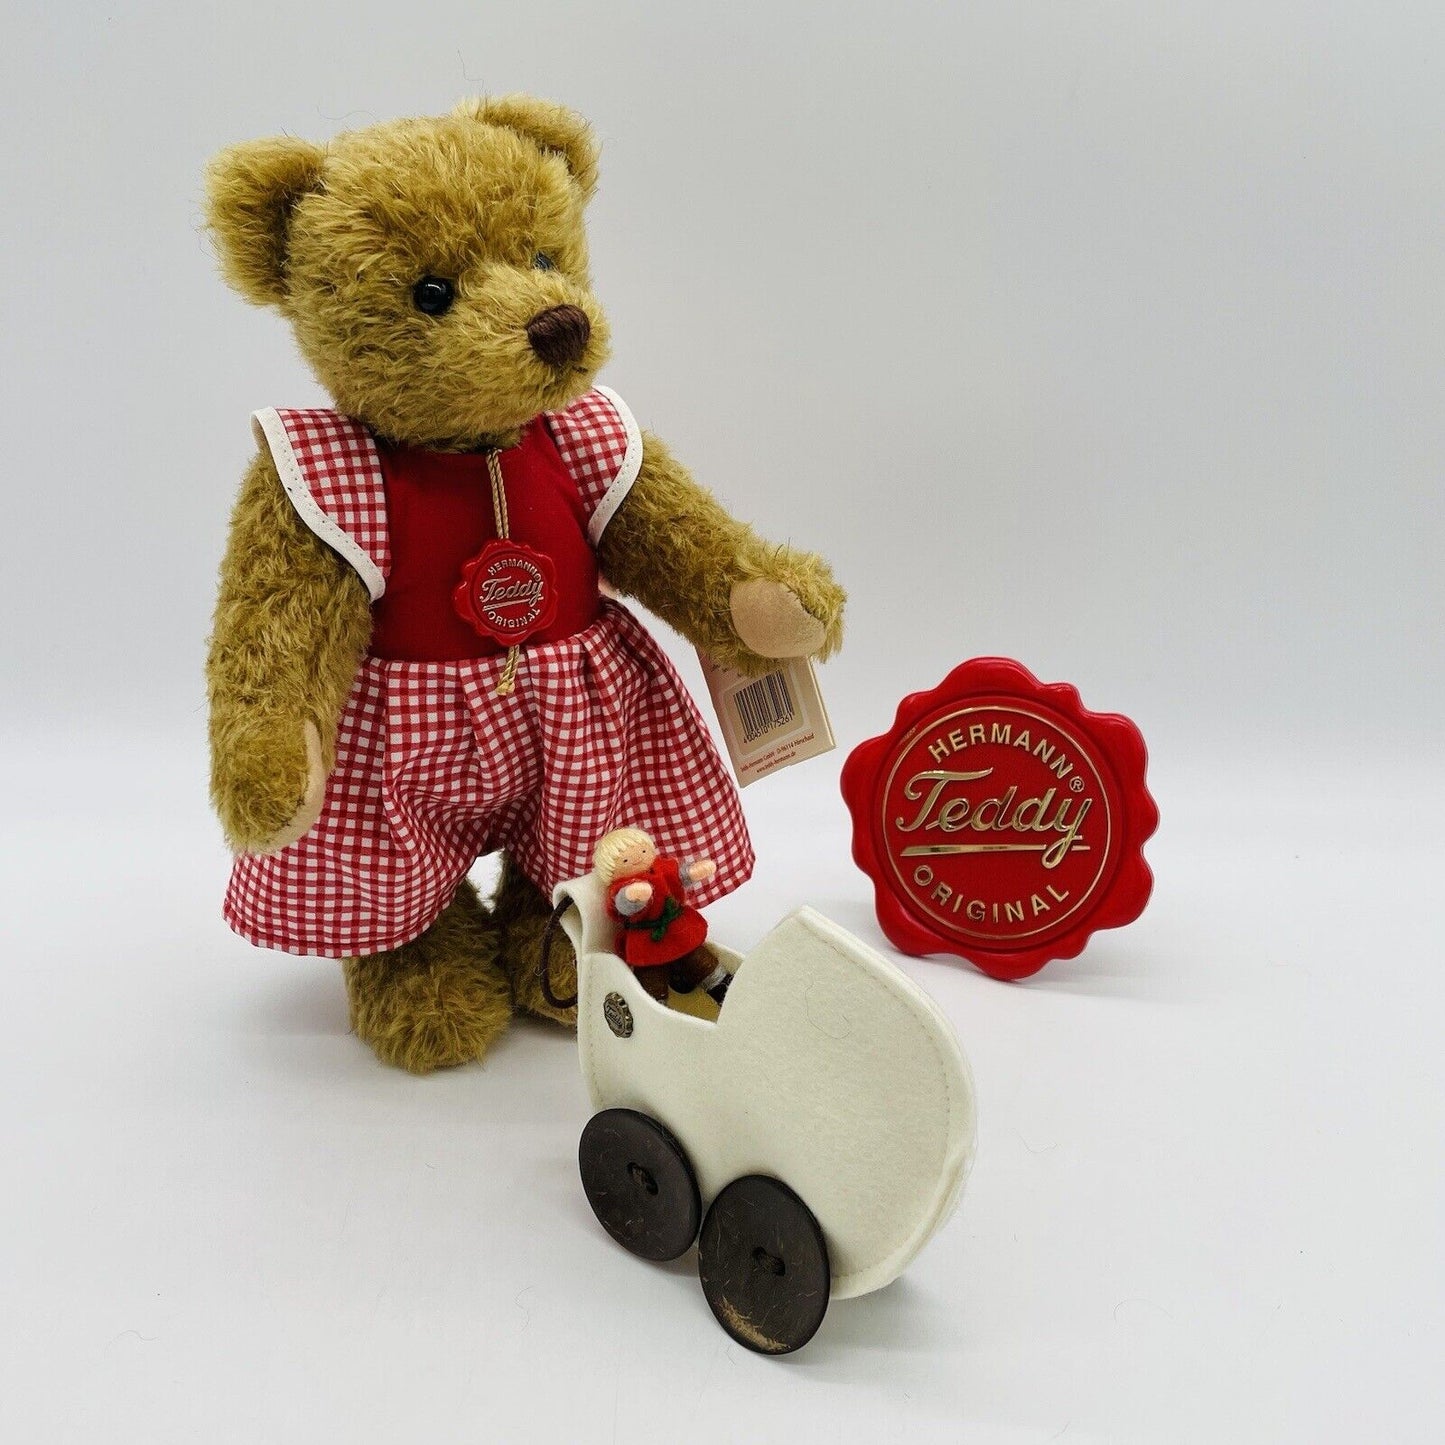 Hermann Teddy Teddybär Klara mit Puppenwagen und Filzpuppe